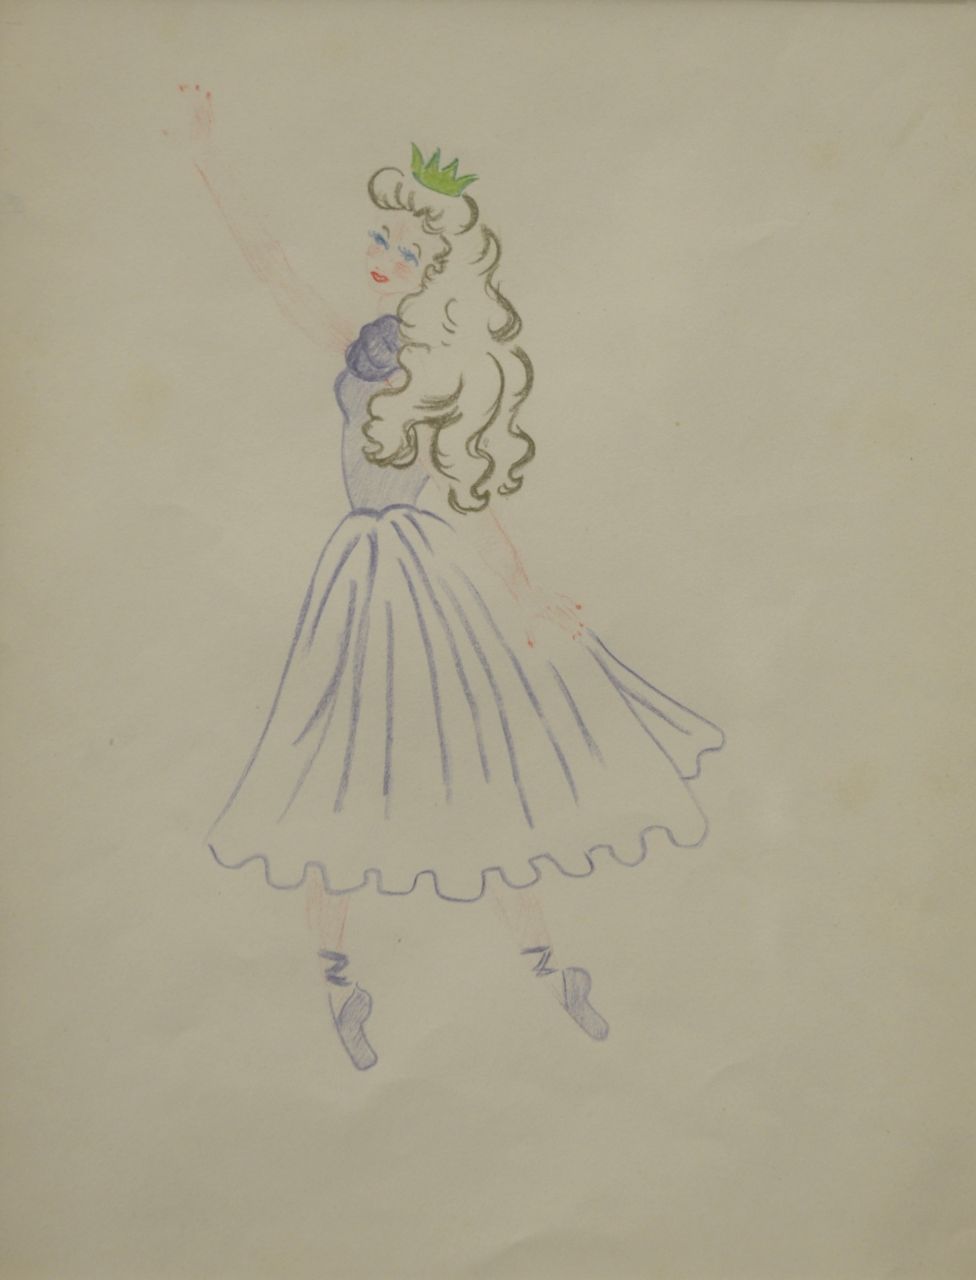 Oranje-Nassau (Prinses Beatrix) B.W.A. van | Beatrix Wilhelmina Armgard van Oranje-Nassau (Prinses Beatrix), Ballet princess, Farbbleistift auf Papier 30,0 x 23,0 cm